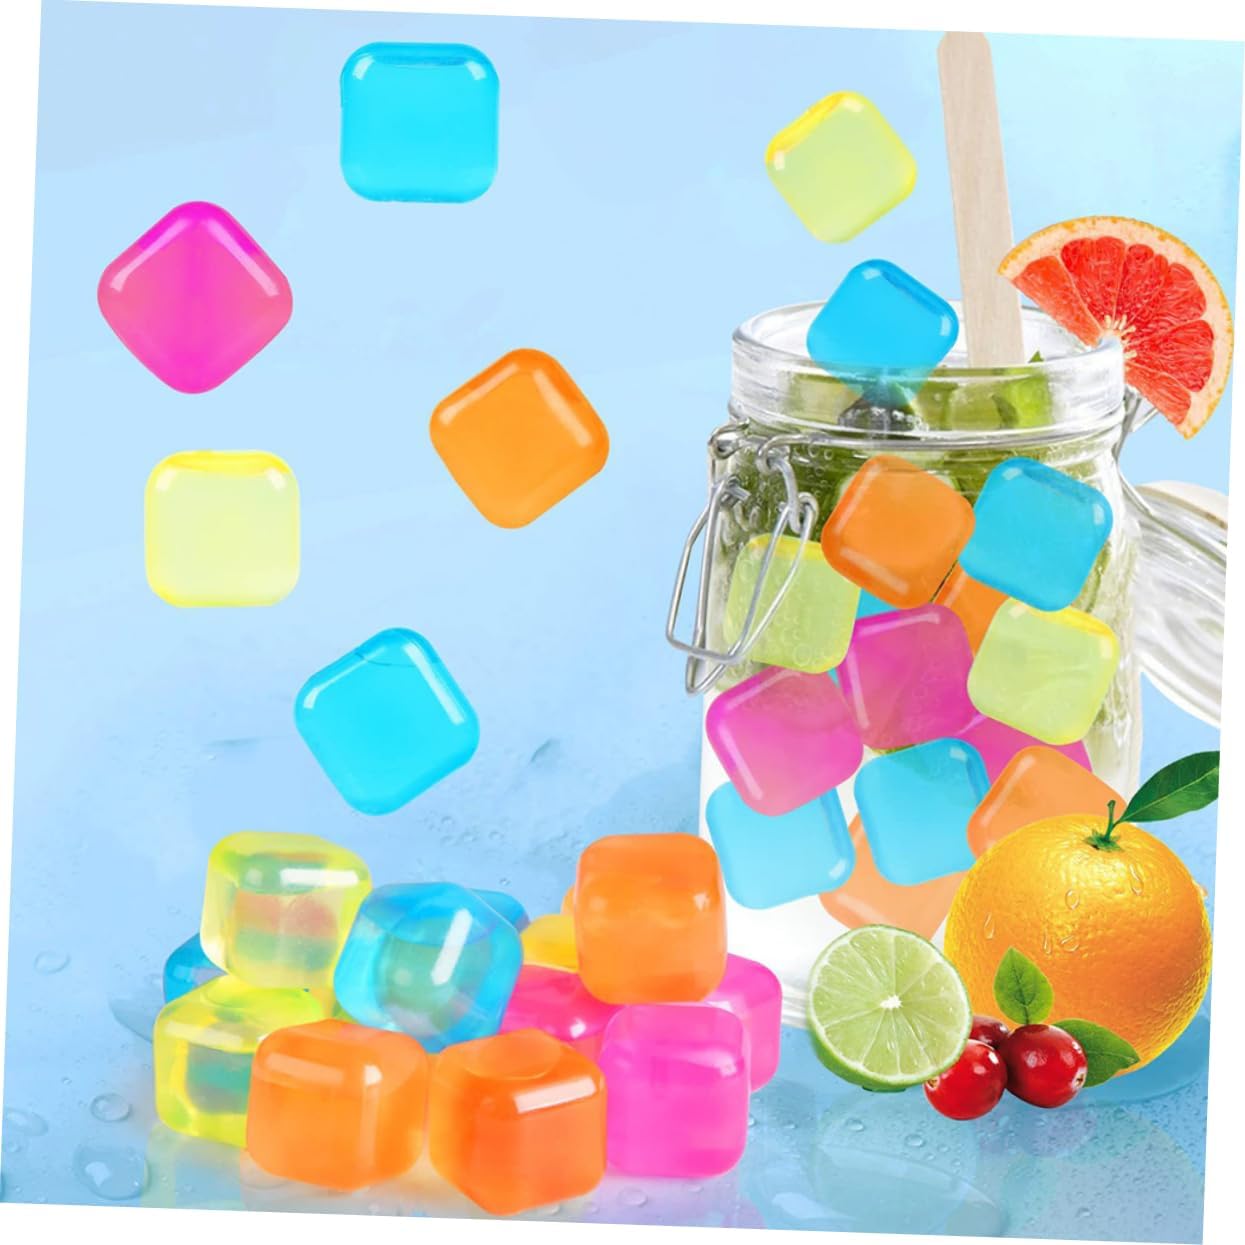 ice cubes,reusable ice cubes,ice cube,reusable ice cube,ice cube tray,plastic ice cubes,reusable ice cubes review,what is reusable ice cubes,colorful ice cubes,what are reusable ice cubes,how to use reusable ice cubes,reusable plastic ice cubes,regular ice cubes vs reusable ice cubes,colorful reusable plastic ice cubes,stainless stell chinlling reusable ice cubes,reuseable ice cubes,reusable freezable plastic ice cubes,ice,